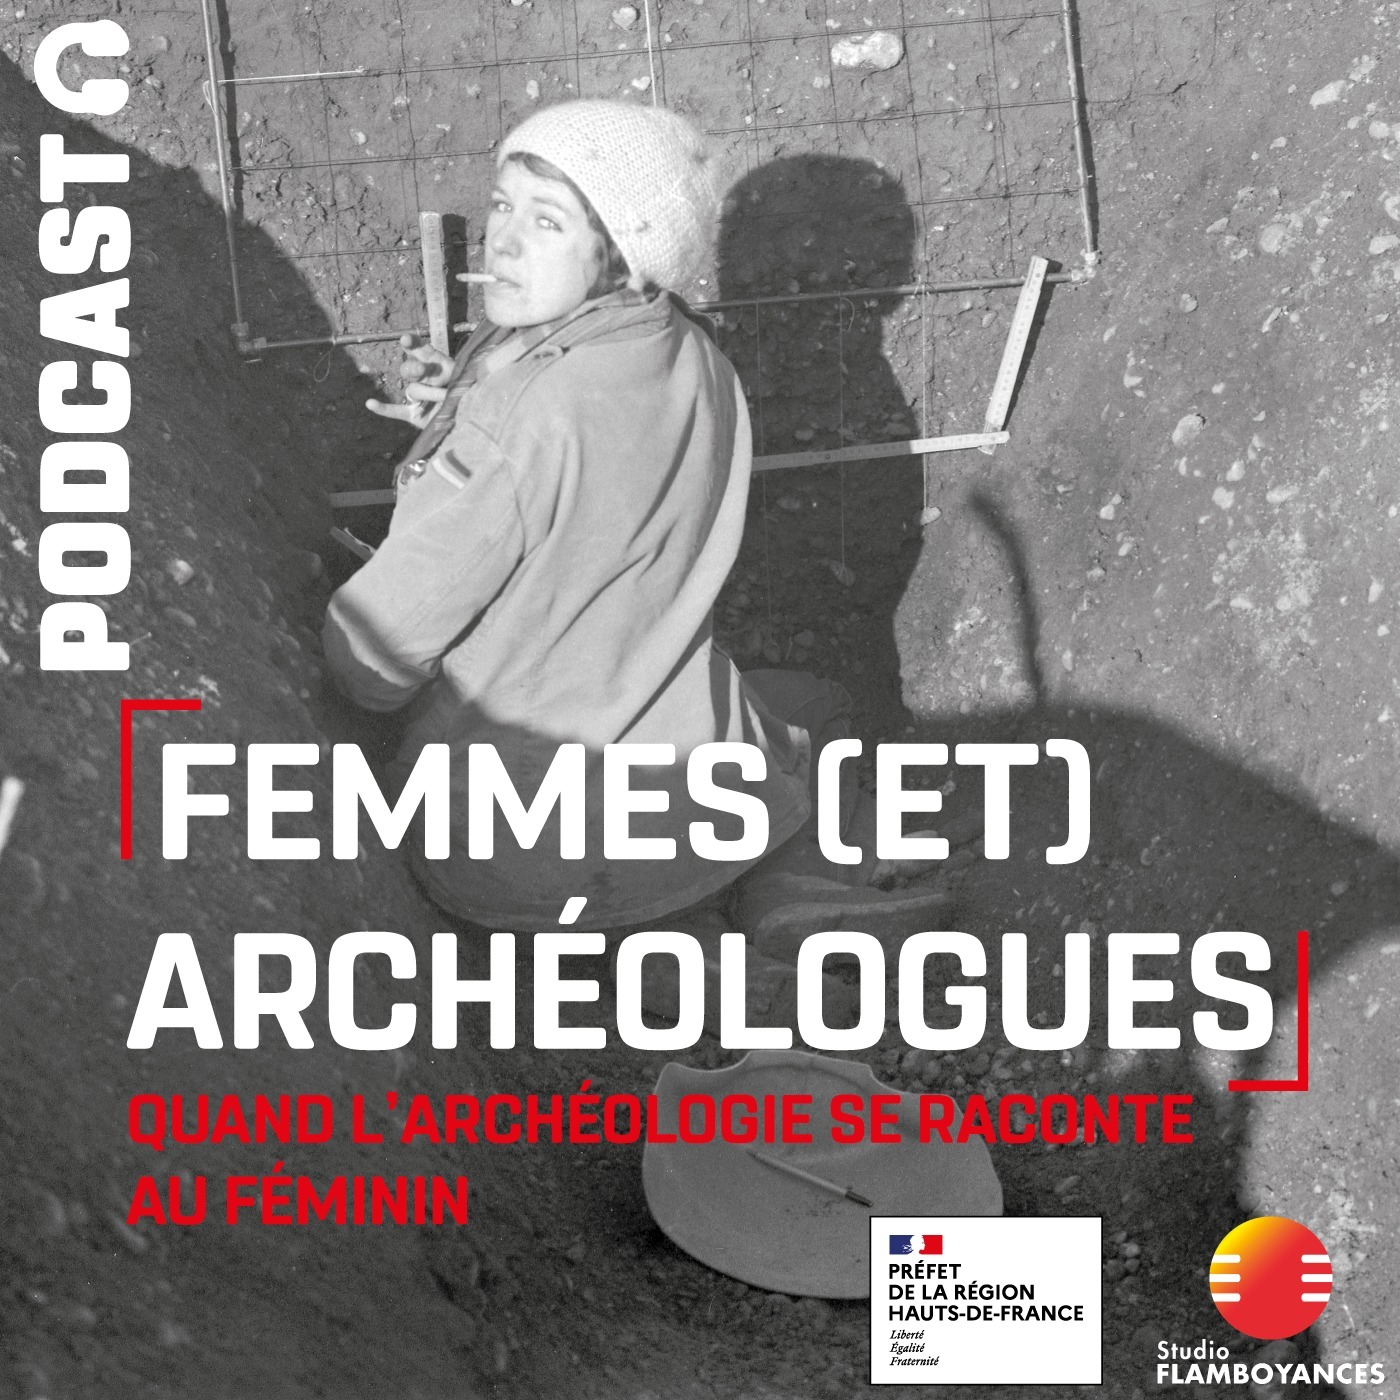 Femmes (et) archéologues